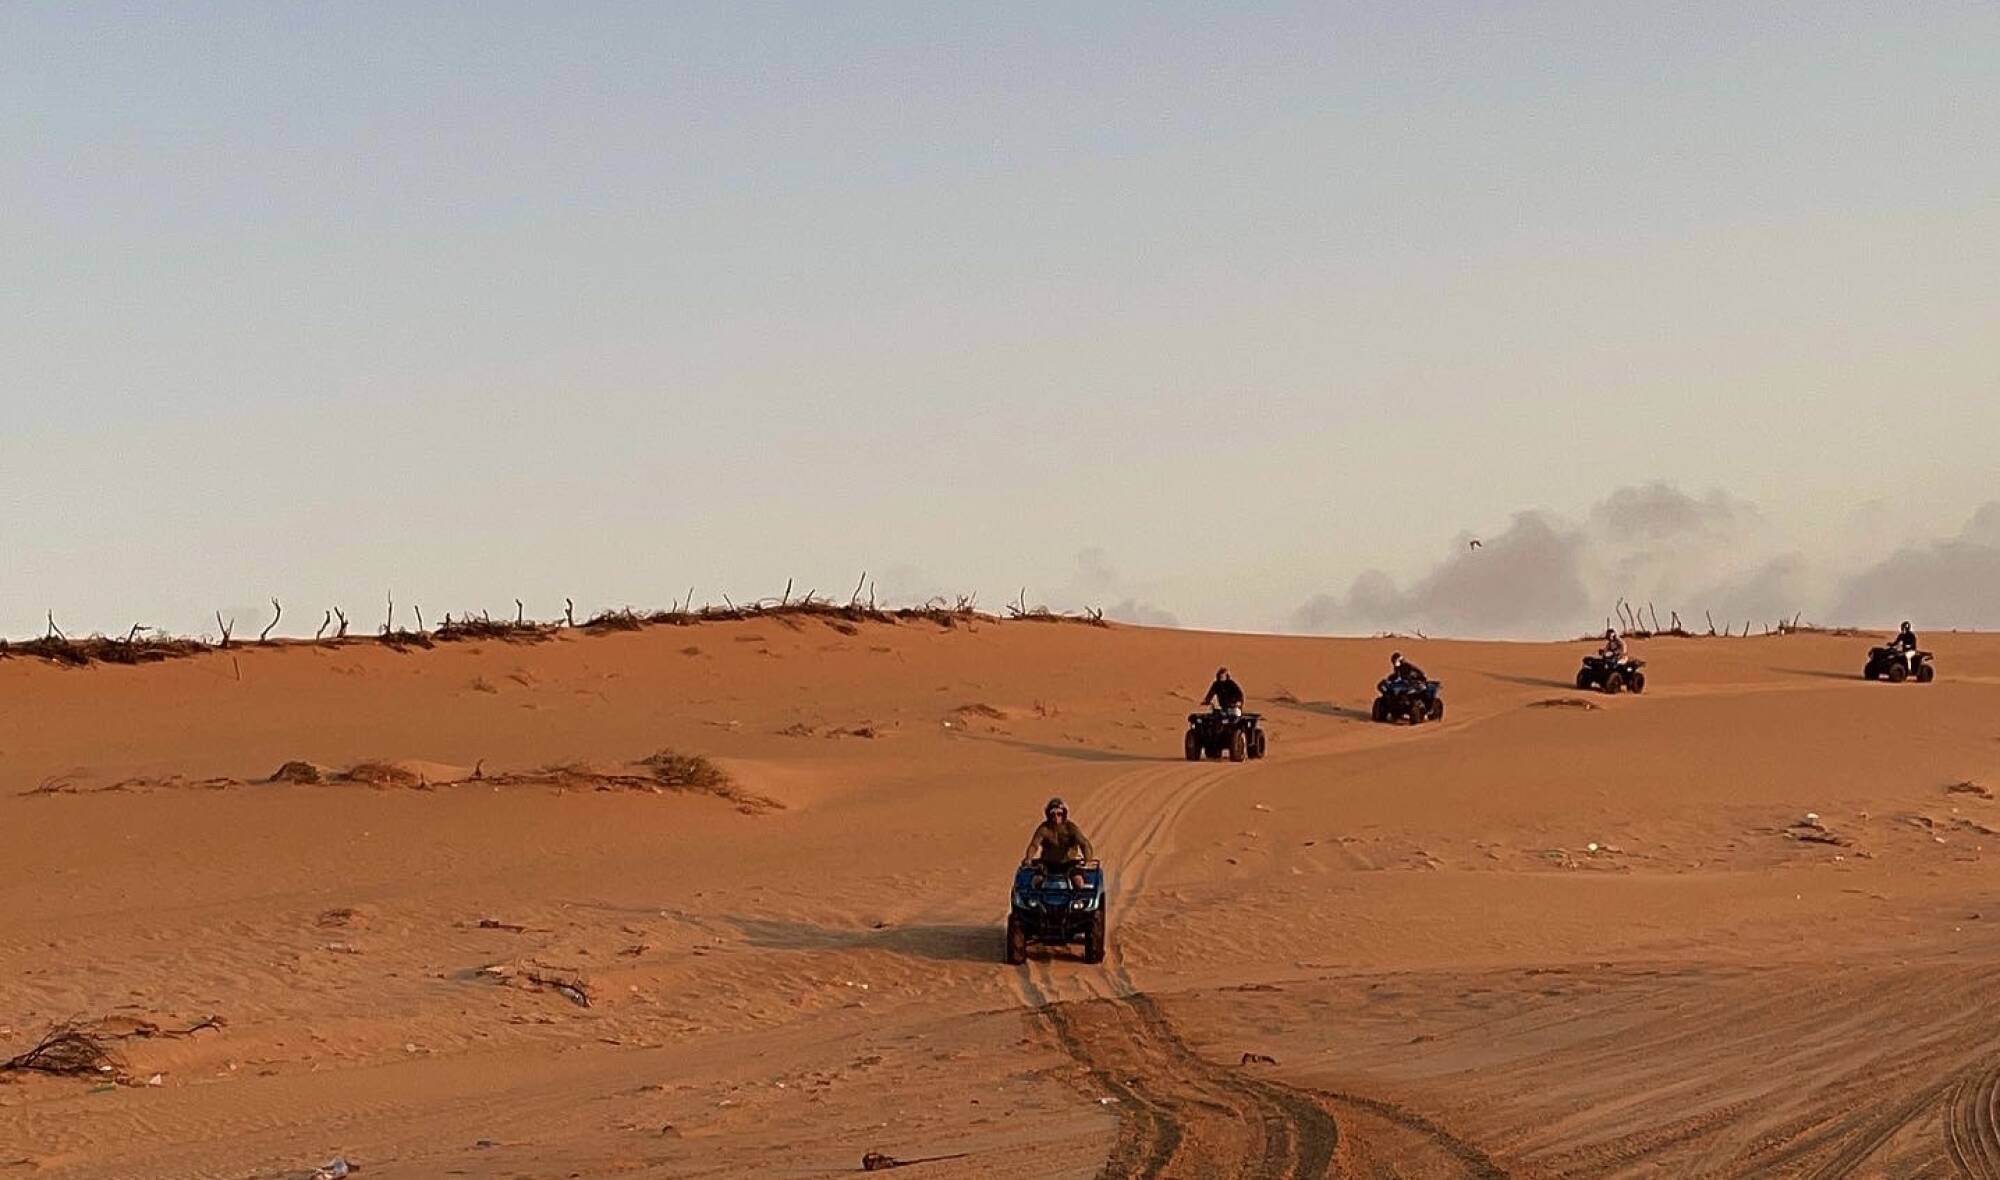 Silvester in Marokko, eine Reise für Frauen